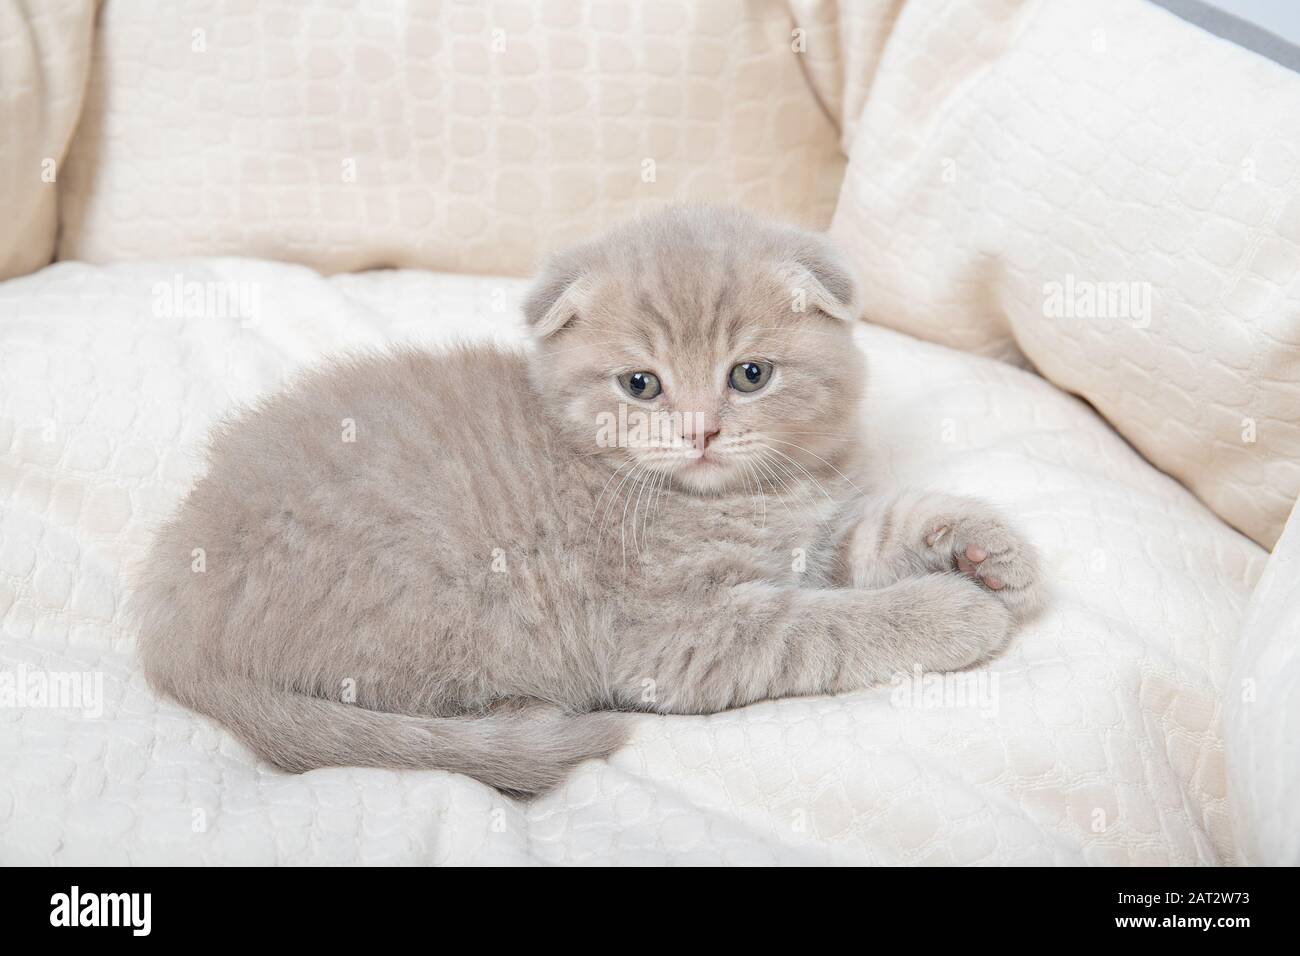 Le chaton se trouve dans un lit pour les chats Banque D'Images